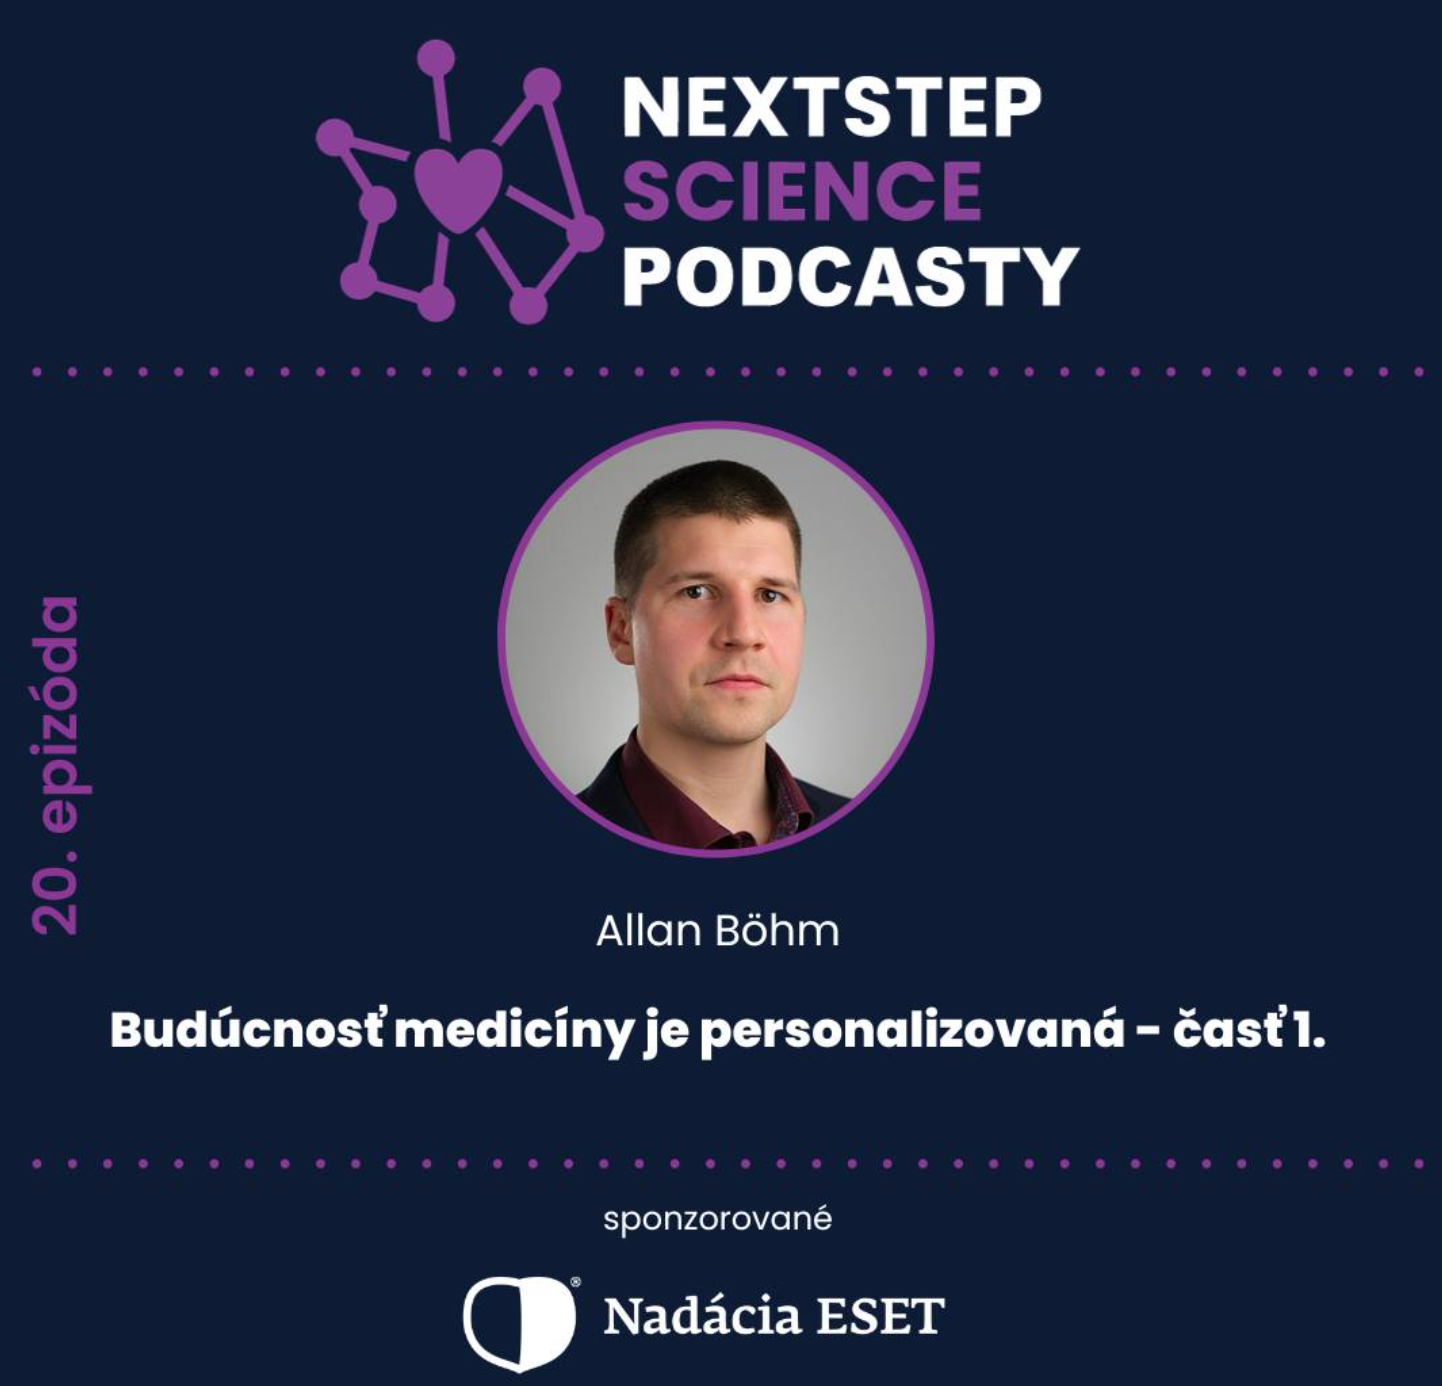 Podcast (NextStepScience): Dr. Allan Böhm - Budúcnosť medicíny je personalizovaná